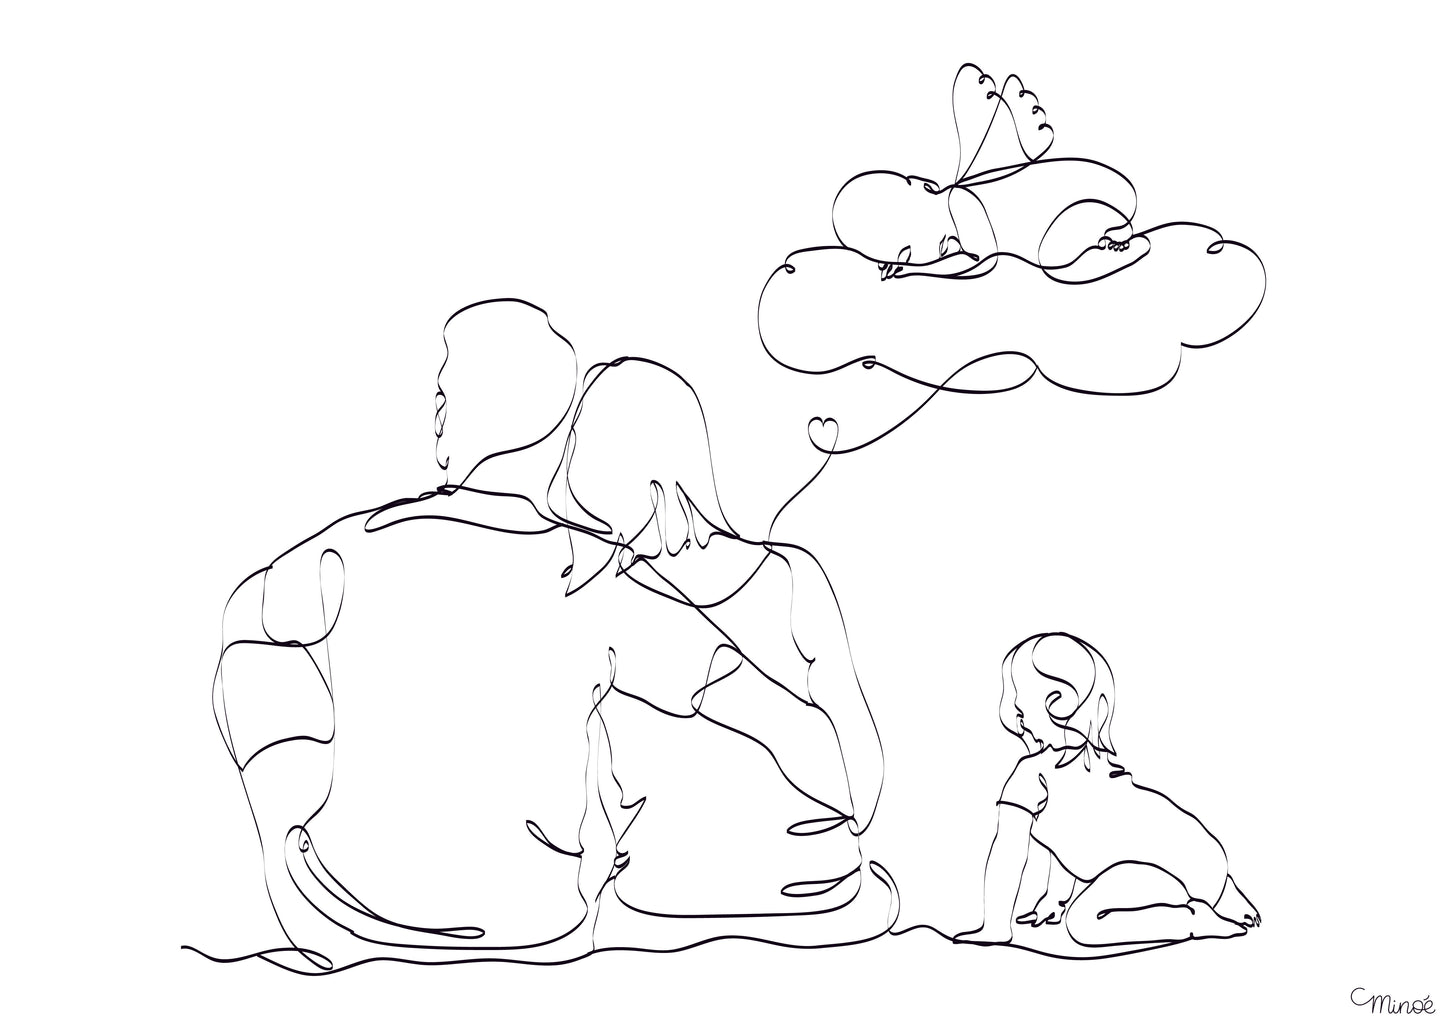 Illustration portrait de famille - famille assise de dos